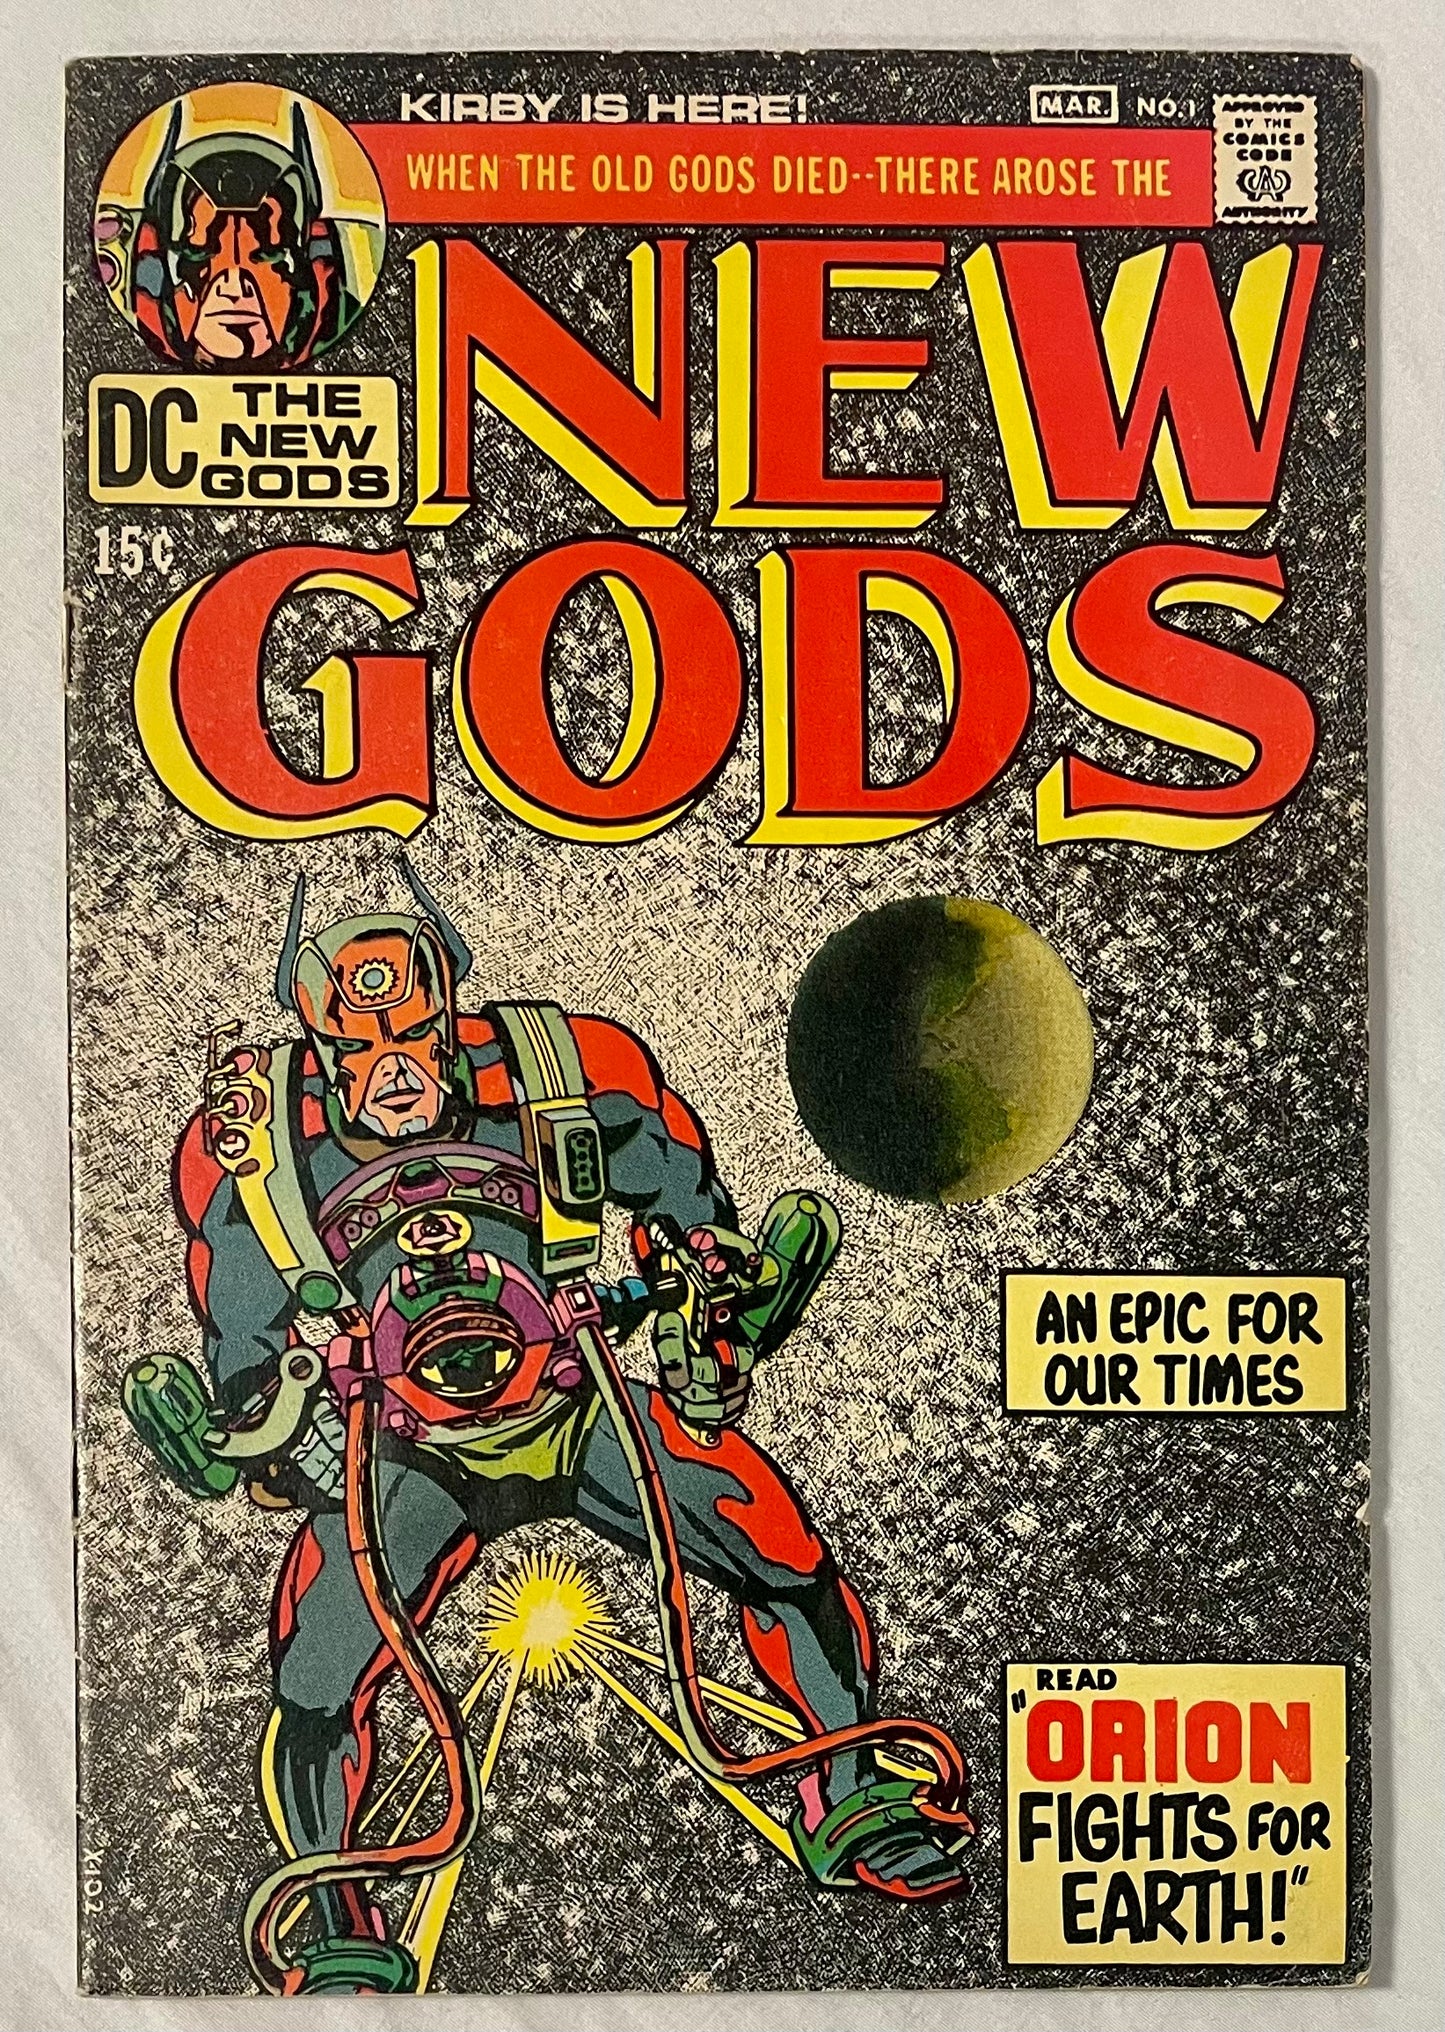 DC Comics New Gods No. 1